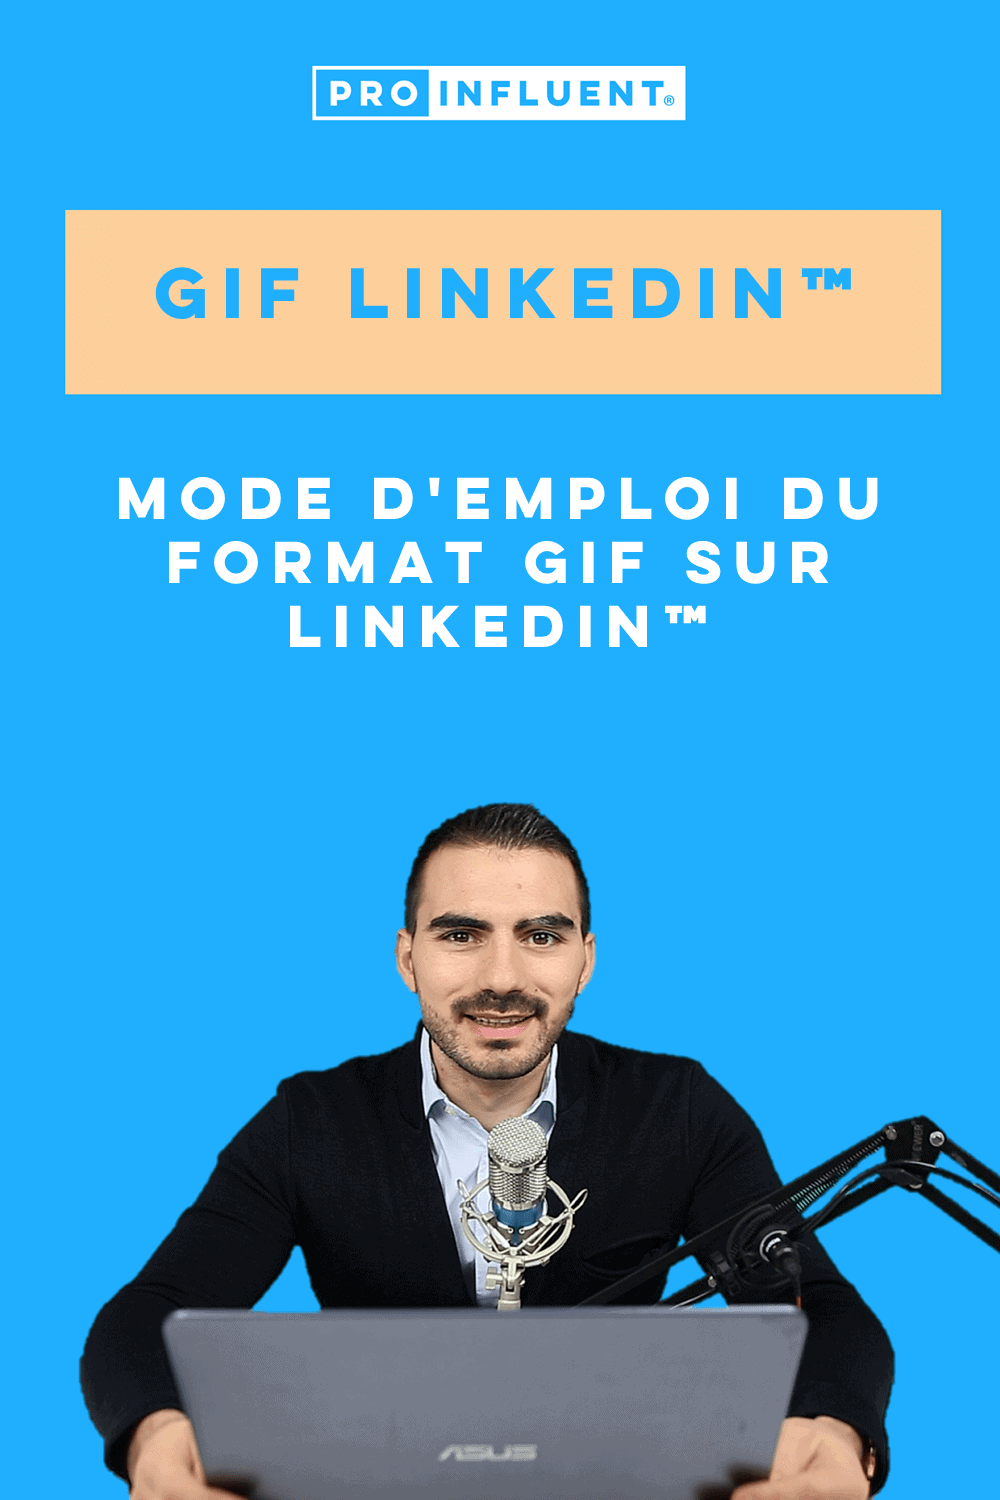 Gif LinkedIn™: come utilizzare il formato GIF su LinkedIn™